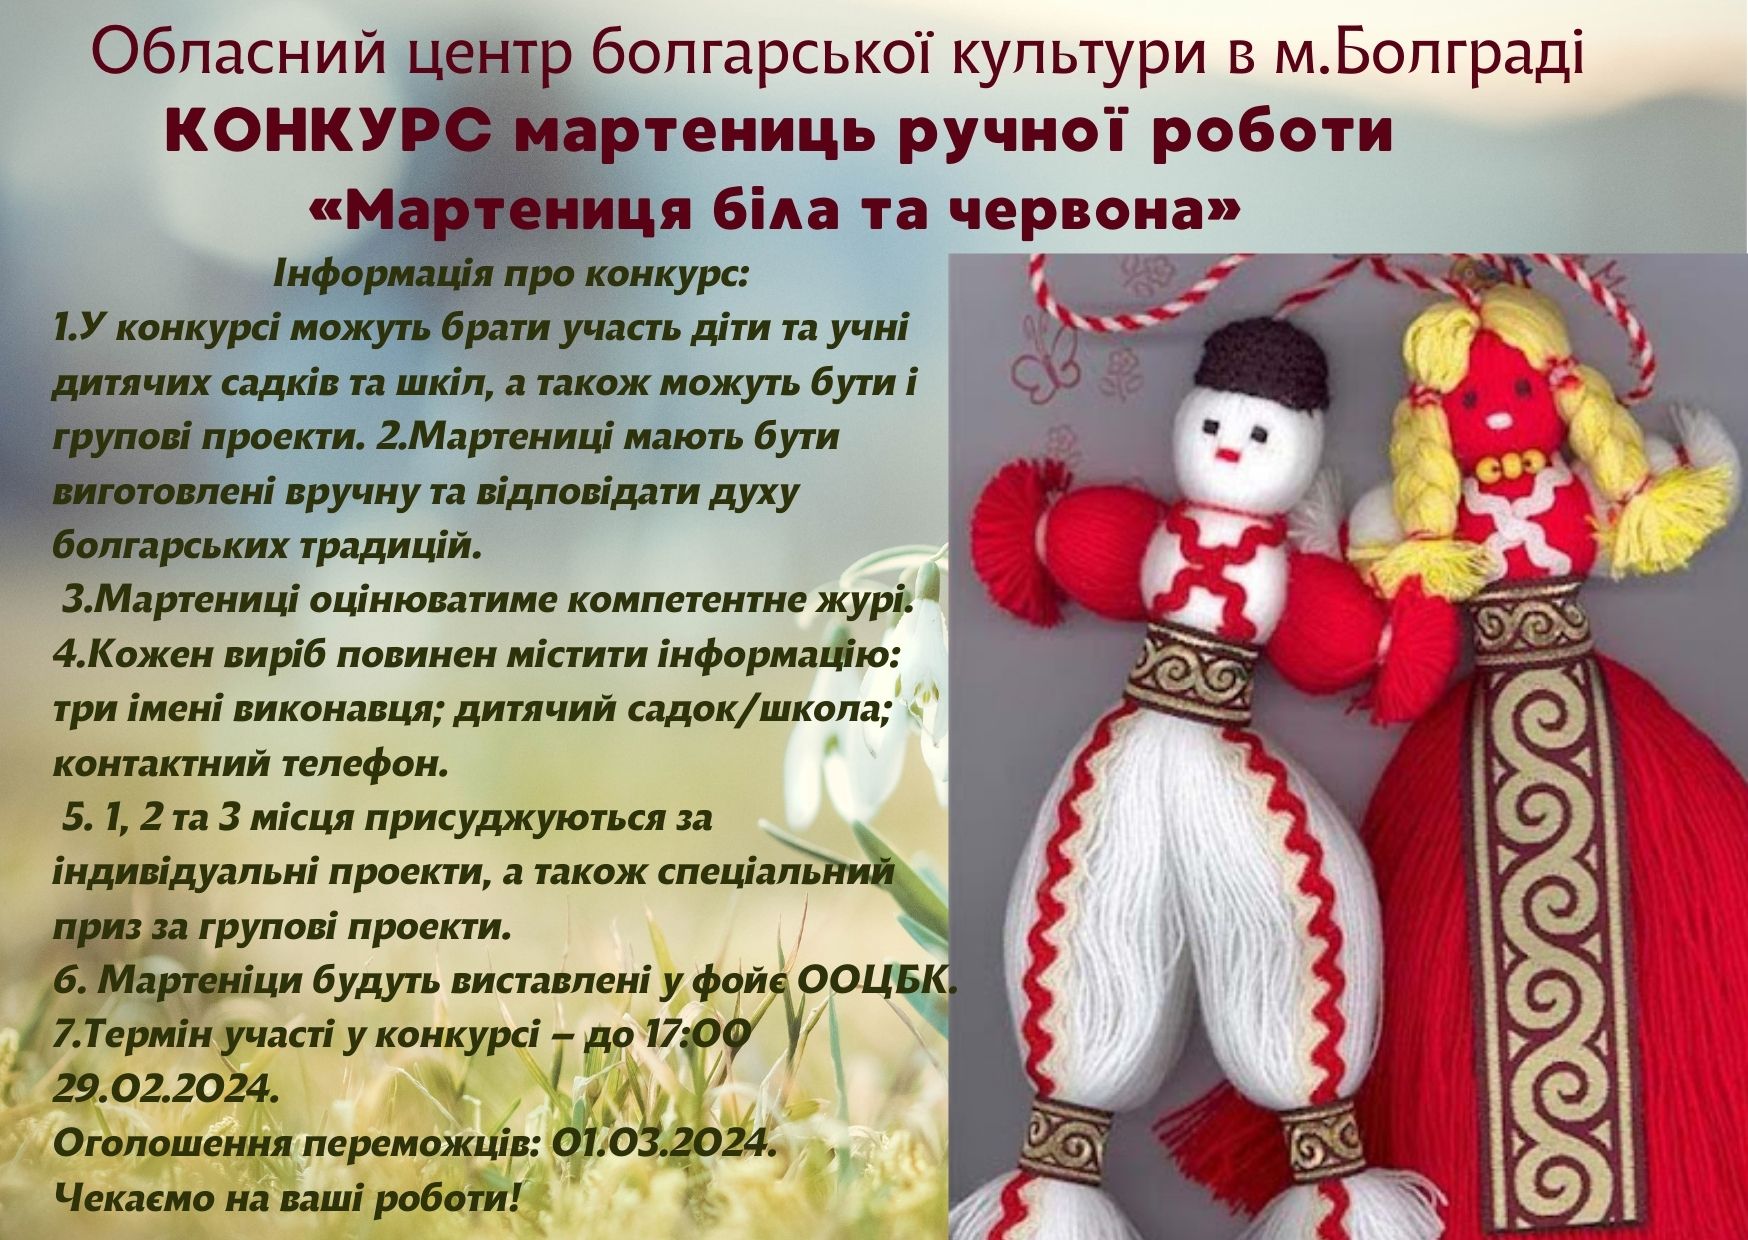 «Мартеница белая и красная»: Одесский областной центр болгарской культуры в городе Болград объявил конкурс на лучшее весеннее украшение ручной работы